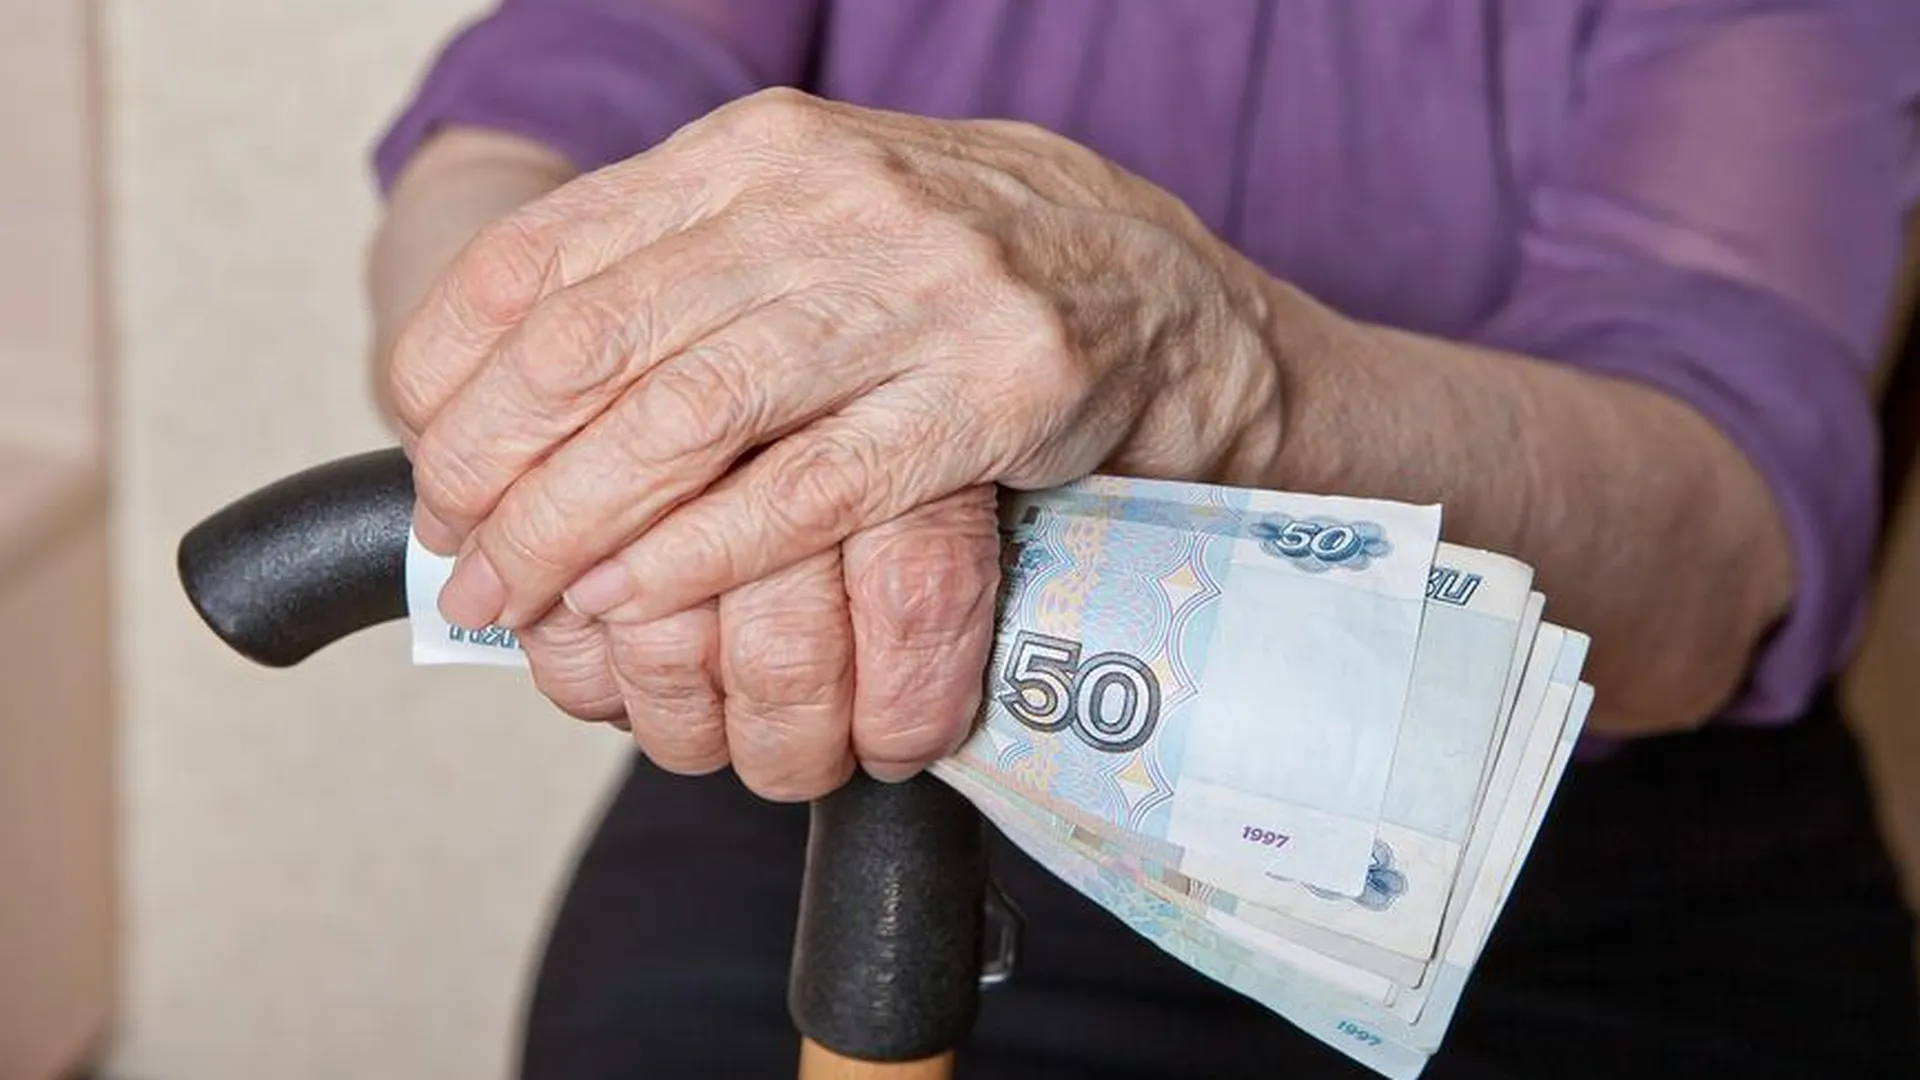 Эксперт: инициатива ЛДПР о передаче пенсионных баллов является неоднозначной